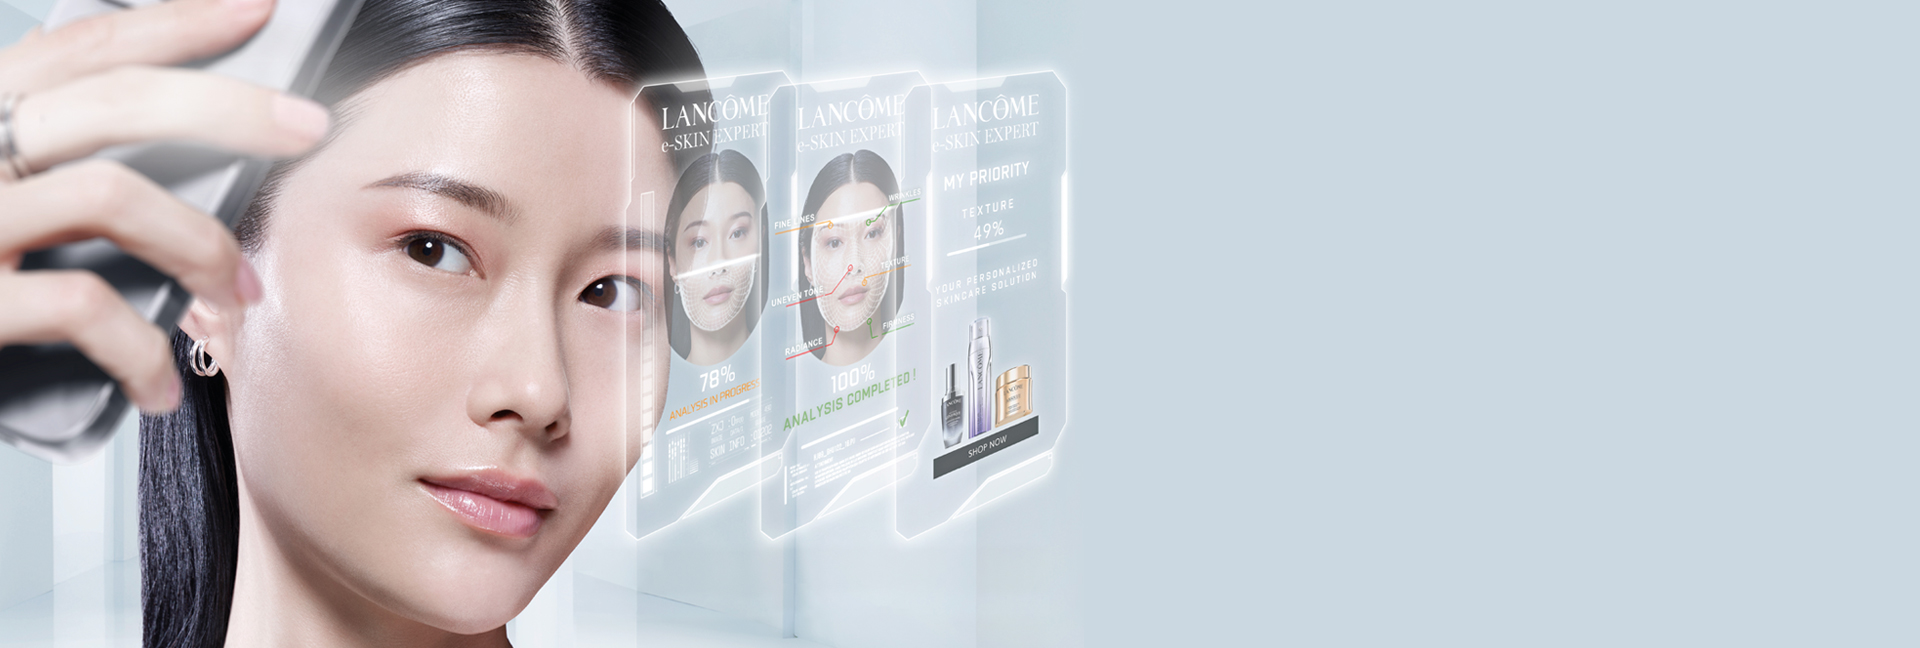 Online skin analysis - Lancôme HK